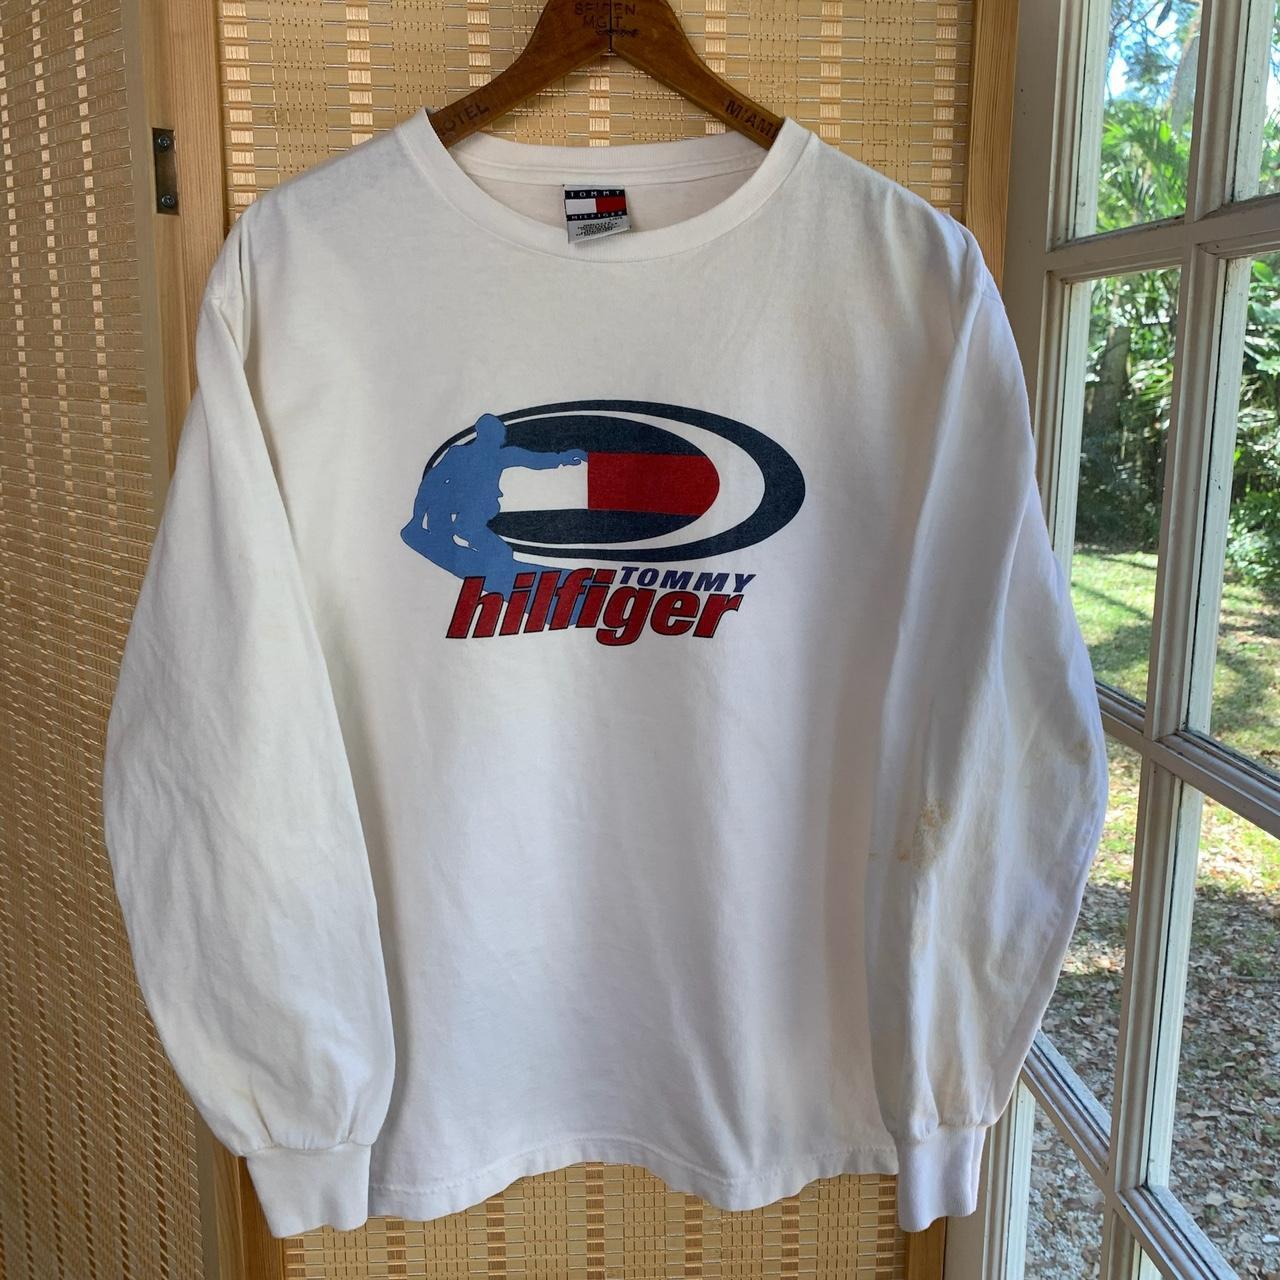 Vintage 90s Tommy Hilfiger snowboarding t shirt... - Depop